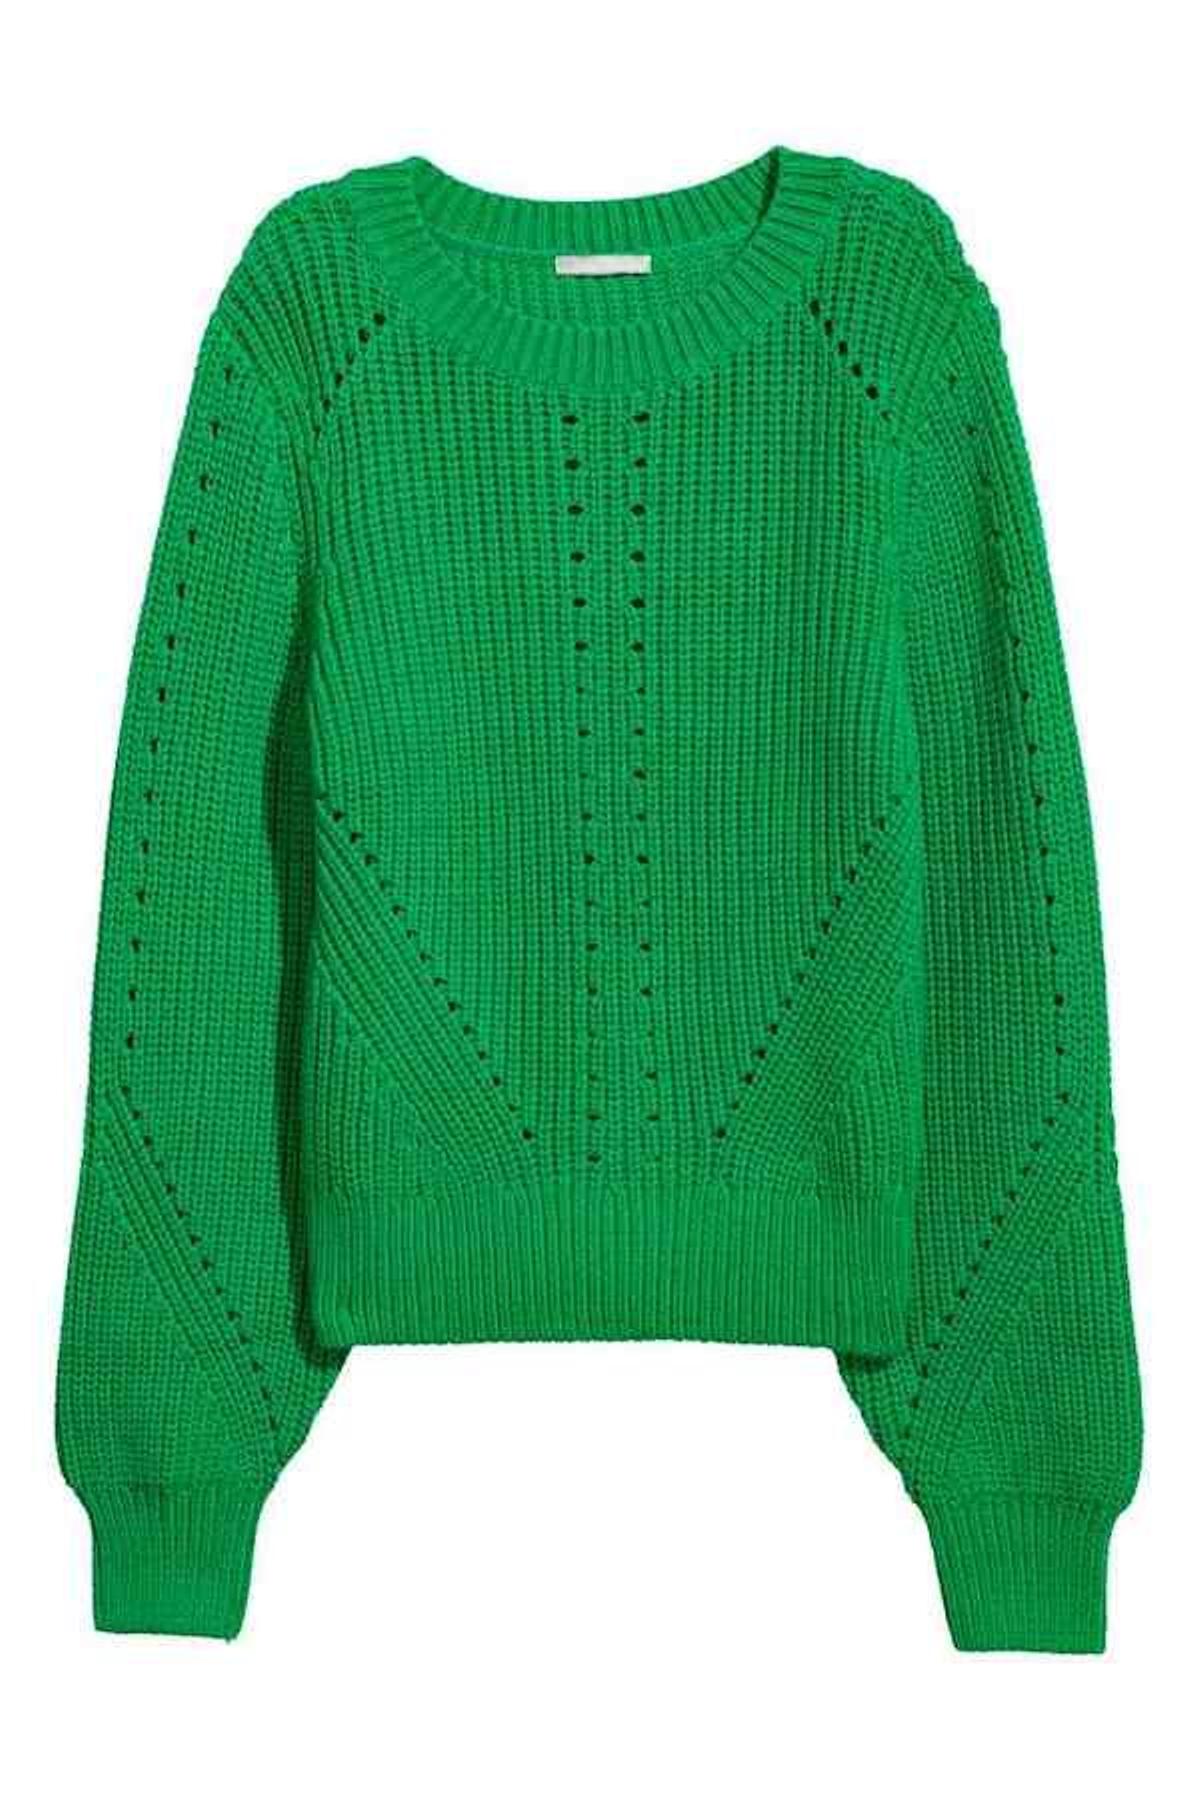 Verde que te quiero verde: el jersey de punto